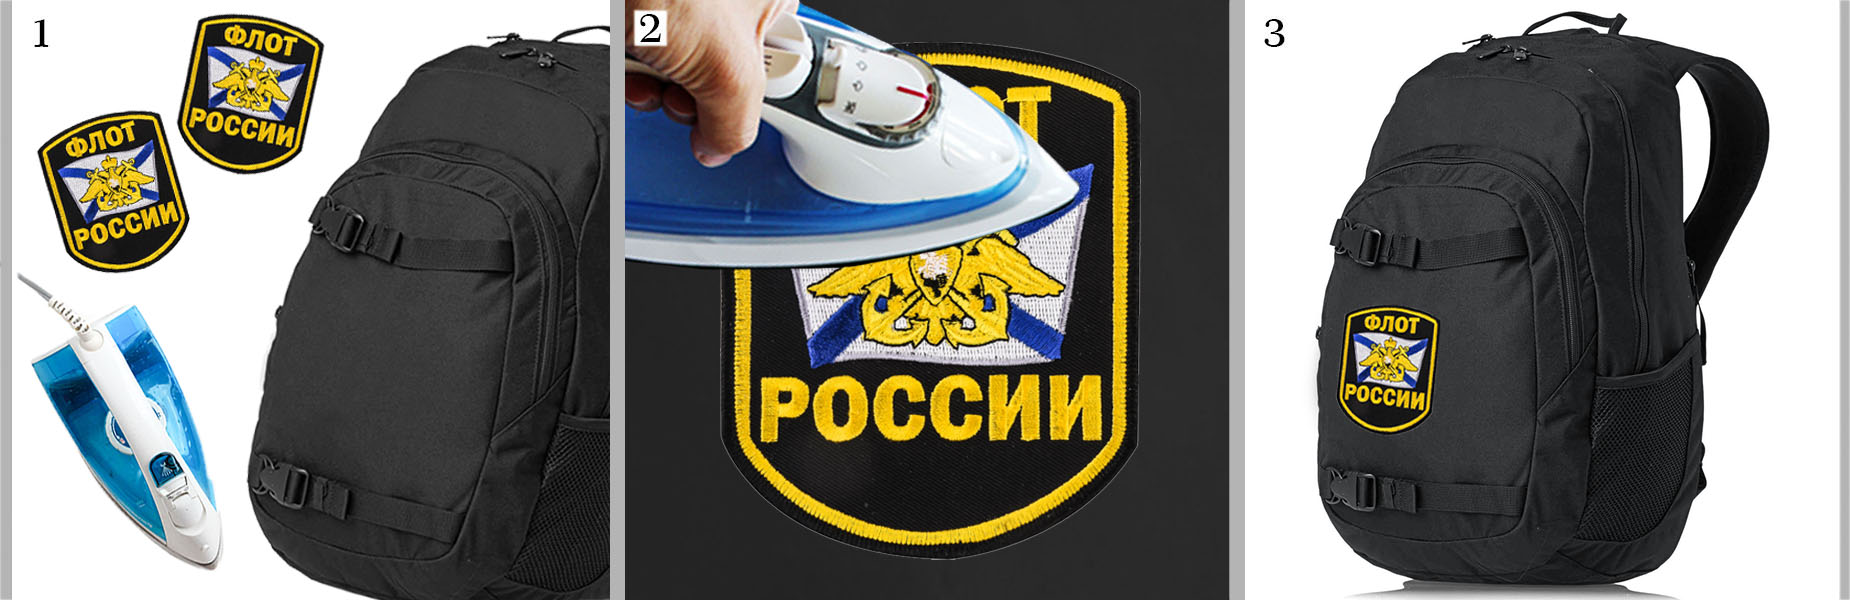 Шеврон "Флот России" на рюкзаках